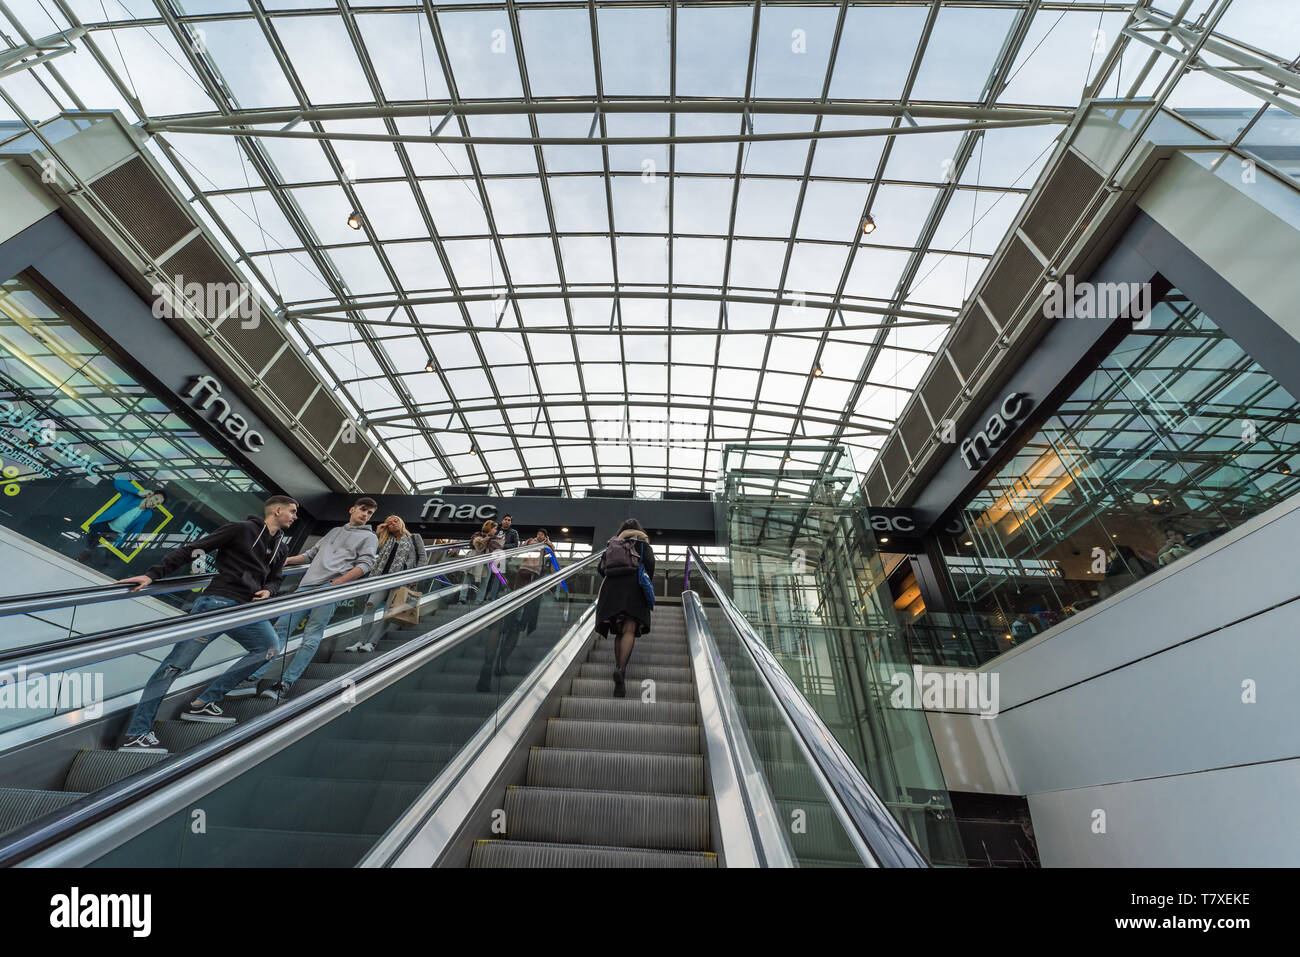 Bruxelles, Belgio - 03 10 2019: Escalator e dal soffitto in vetro del centro commerciale City 2 e la Fnac Foto Stock